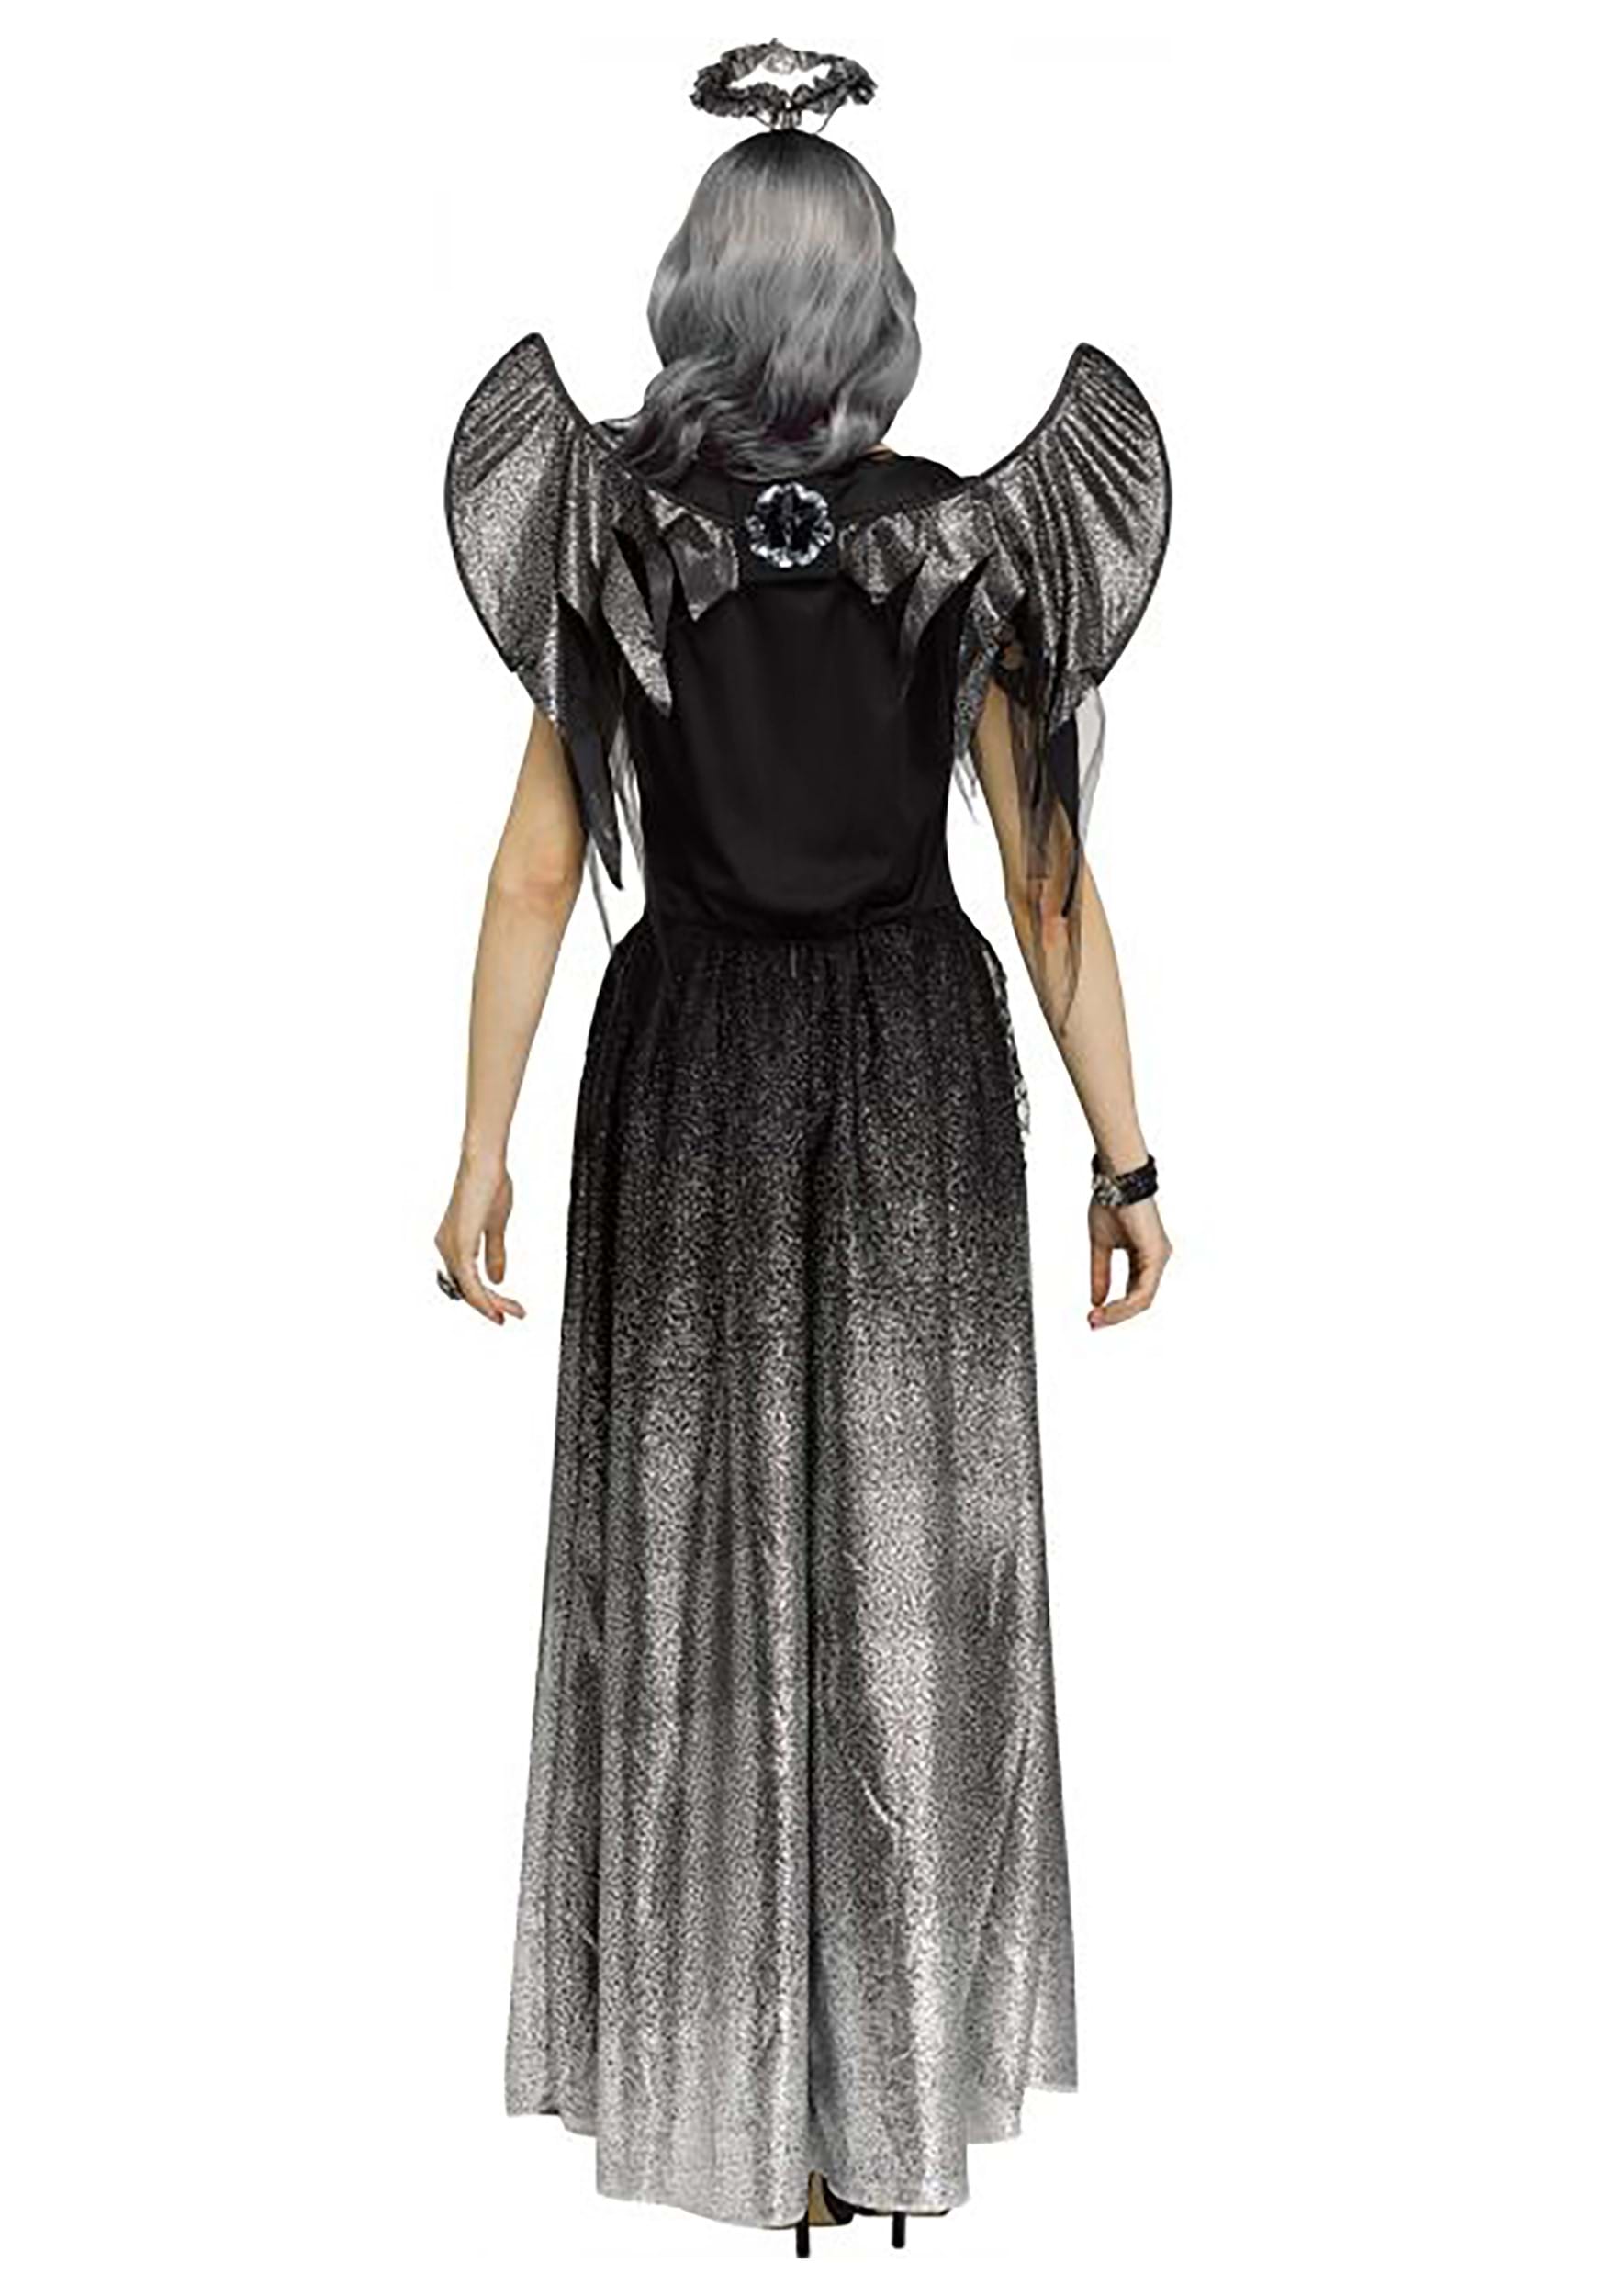 Onyx Angel Women's Fancy Dress Costume